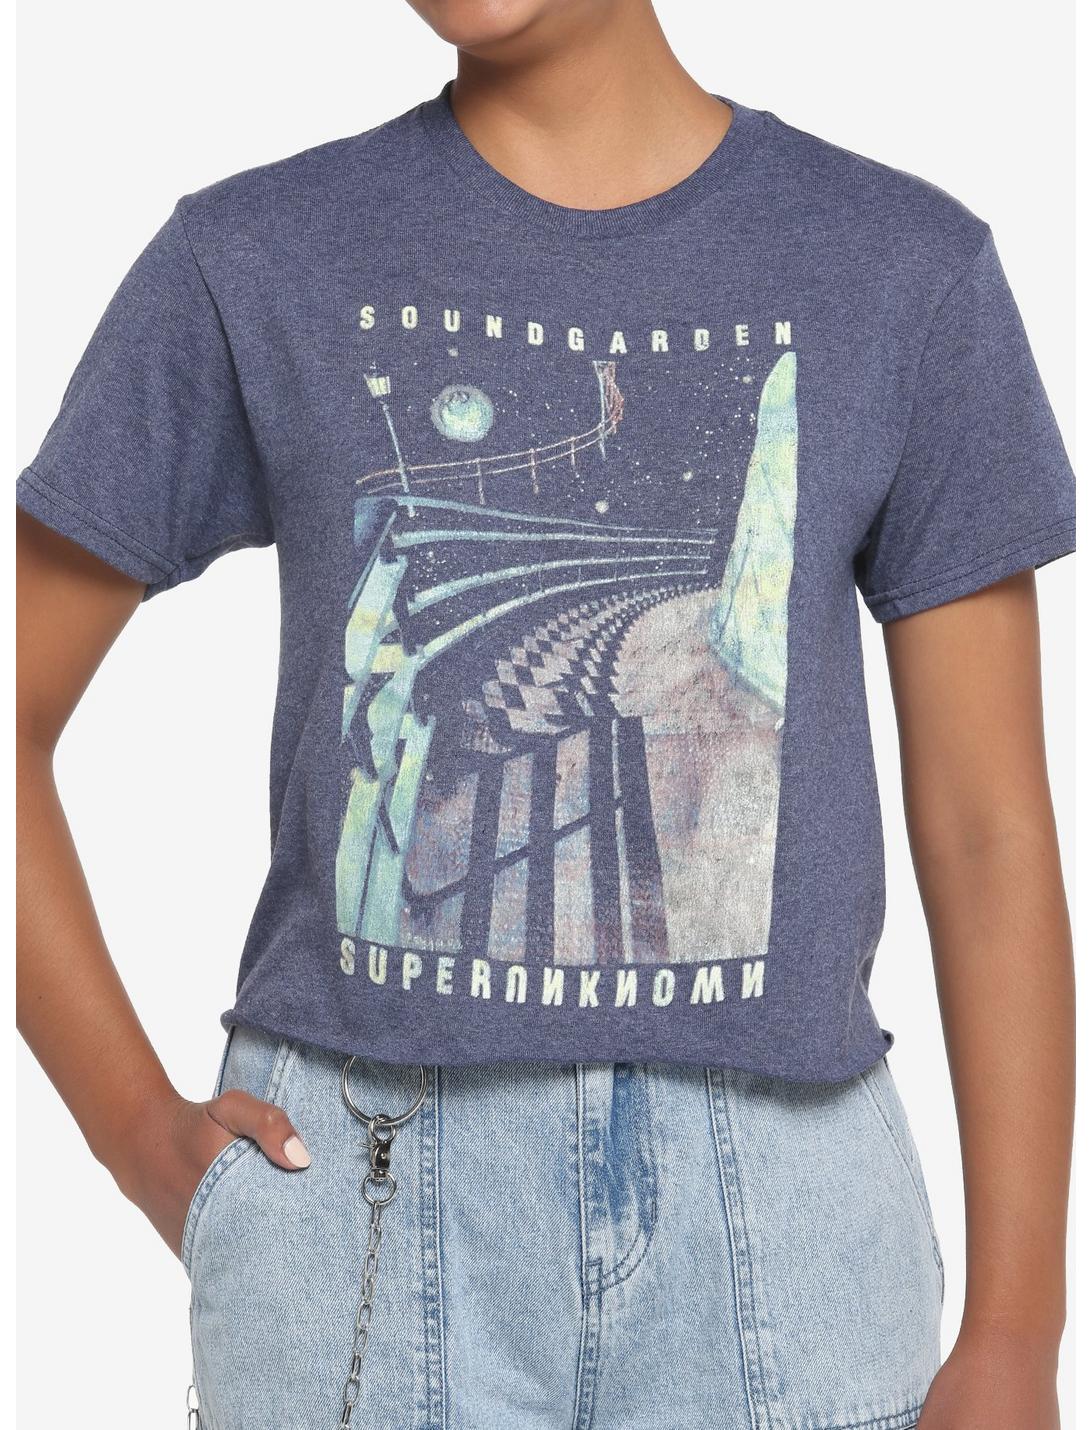 Soundgarden Superunknown Girls Crop T-Shirt, BLUE, hi-res